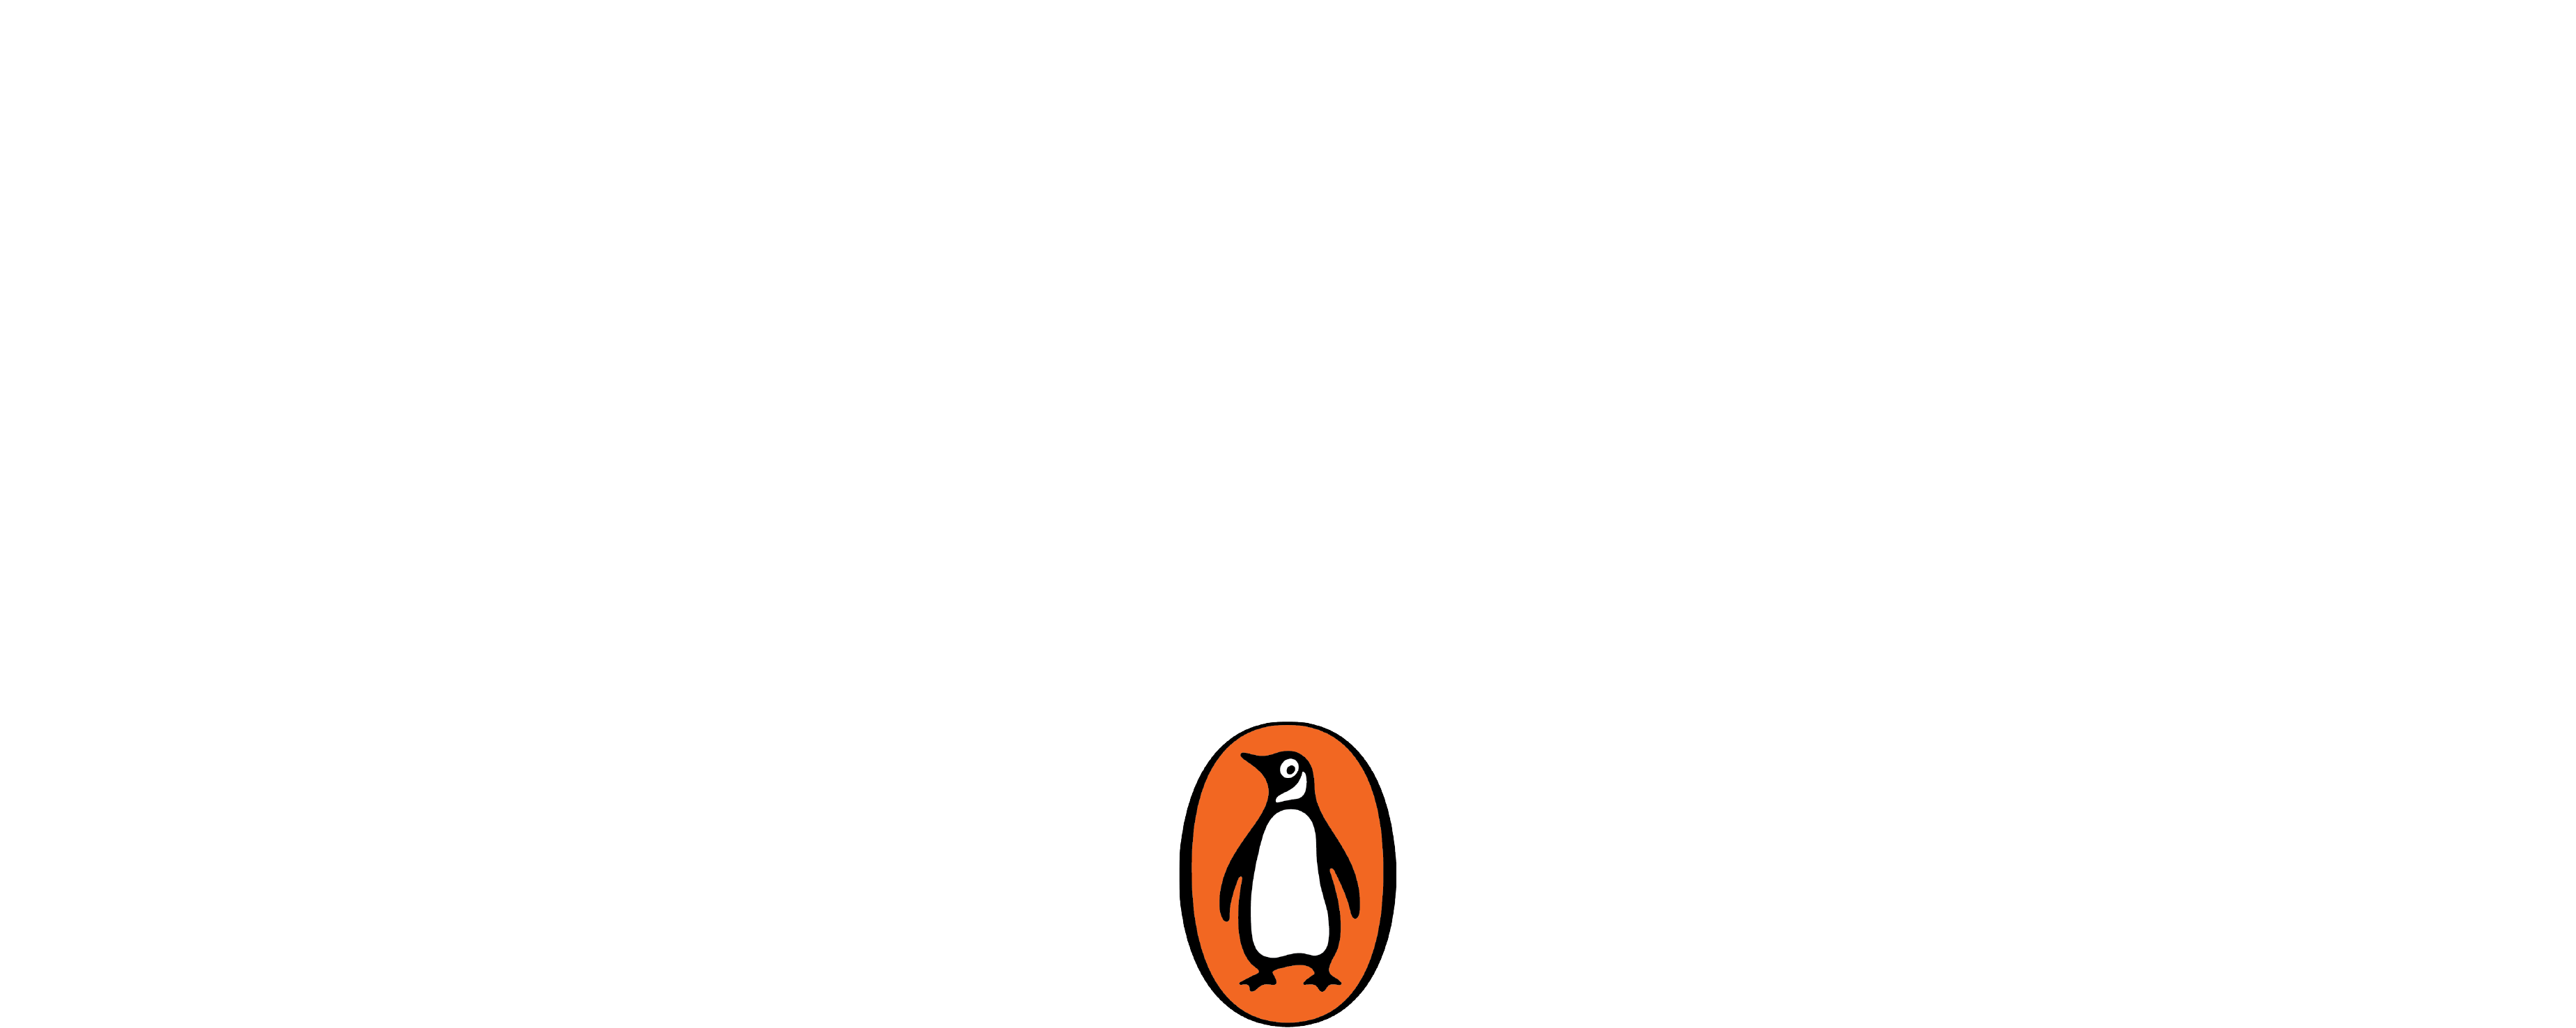 TOGETHER by Jamie Oliver & Penguin Random House